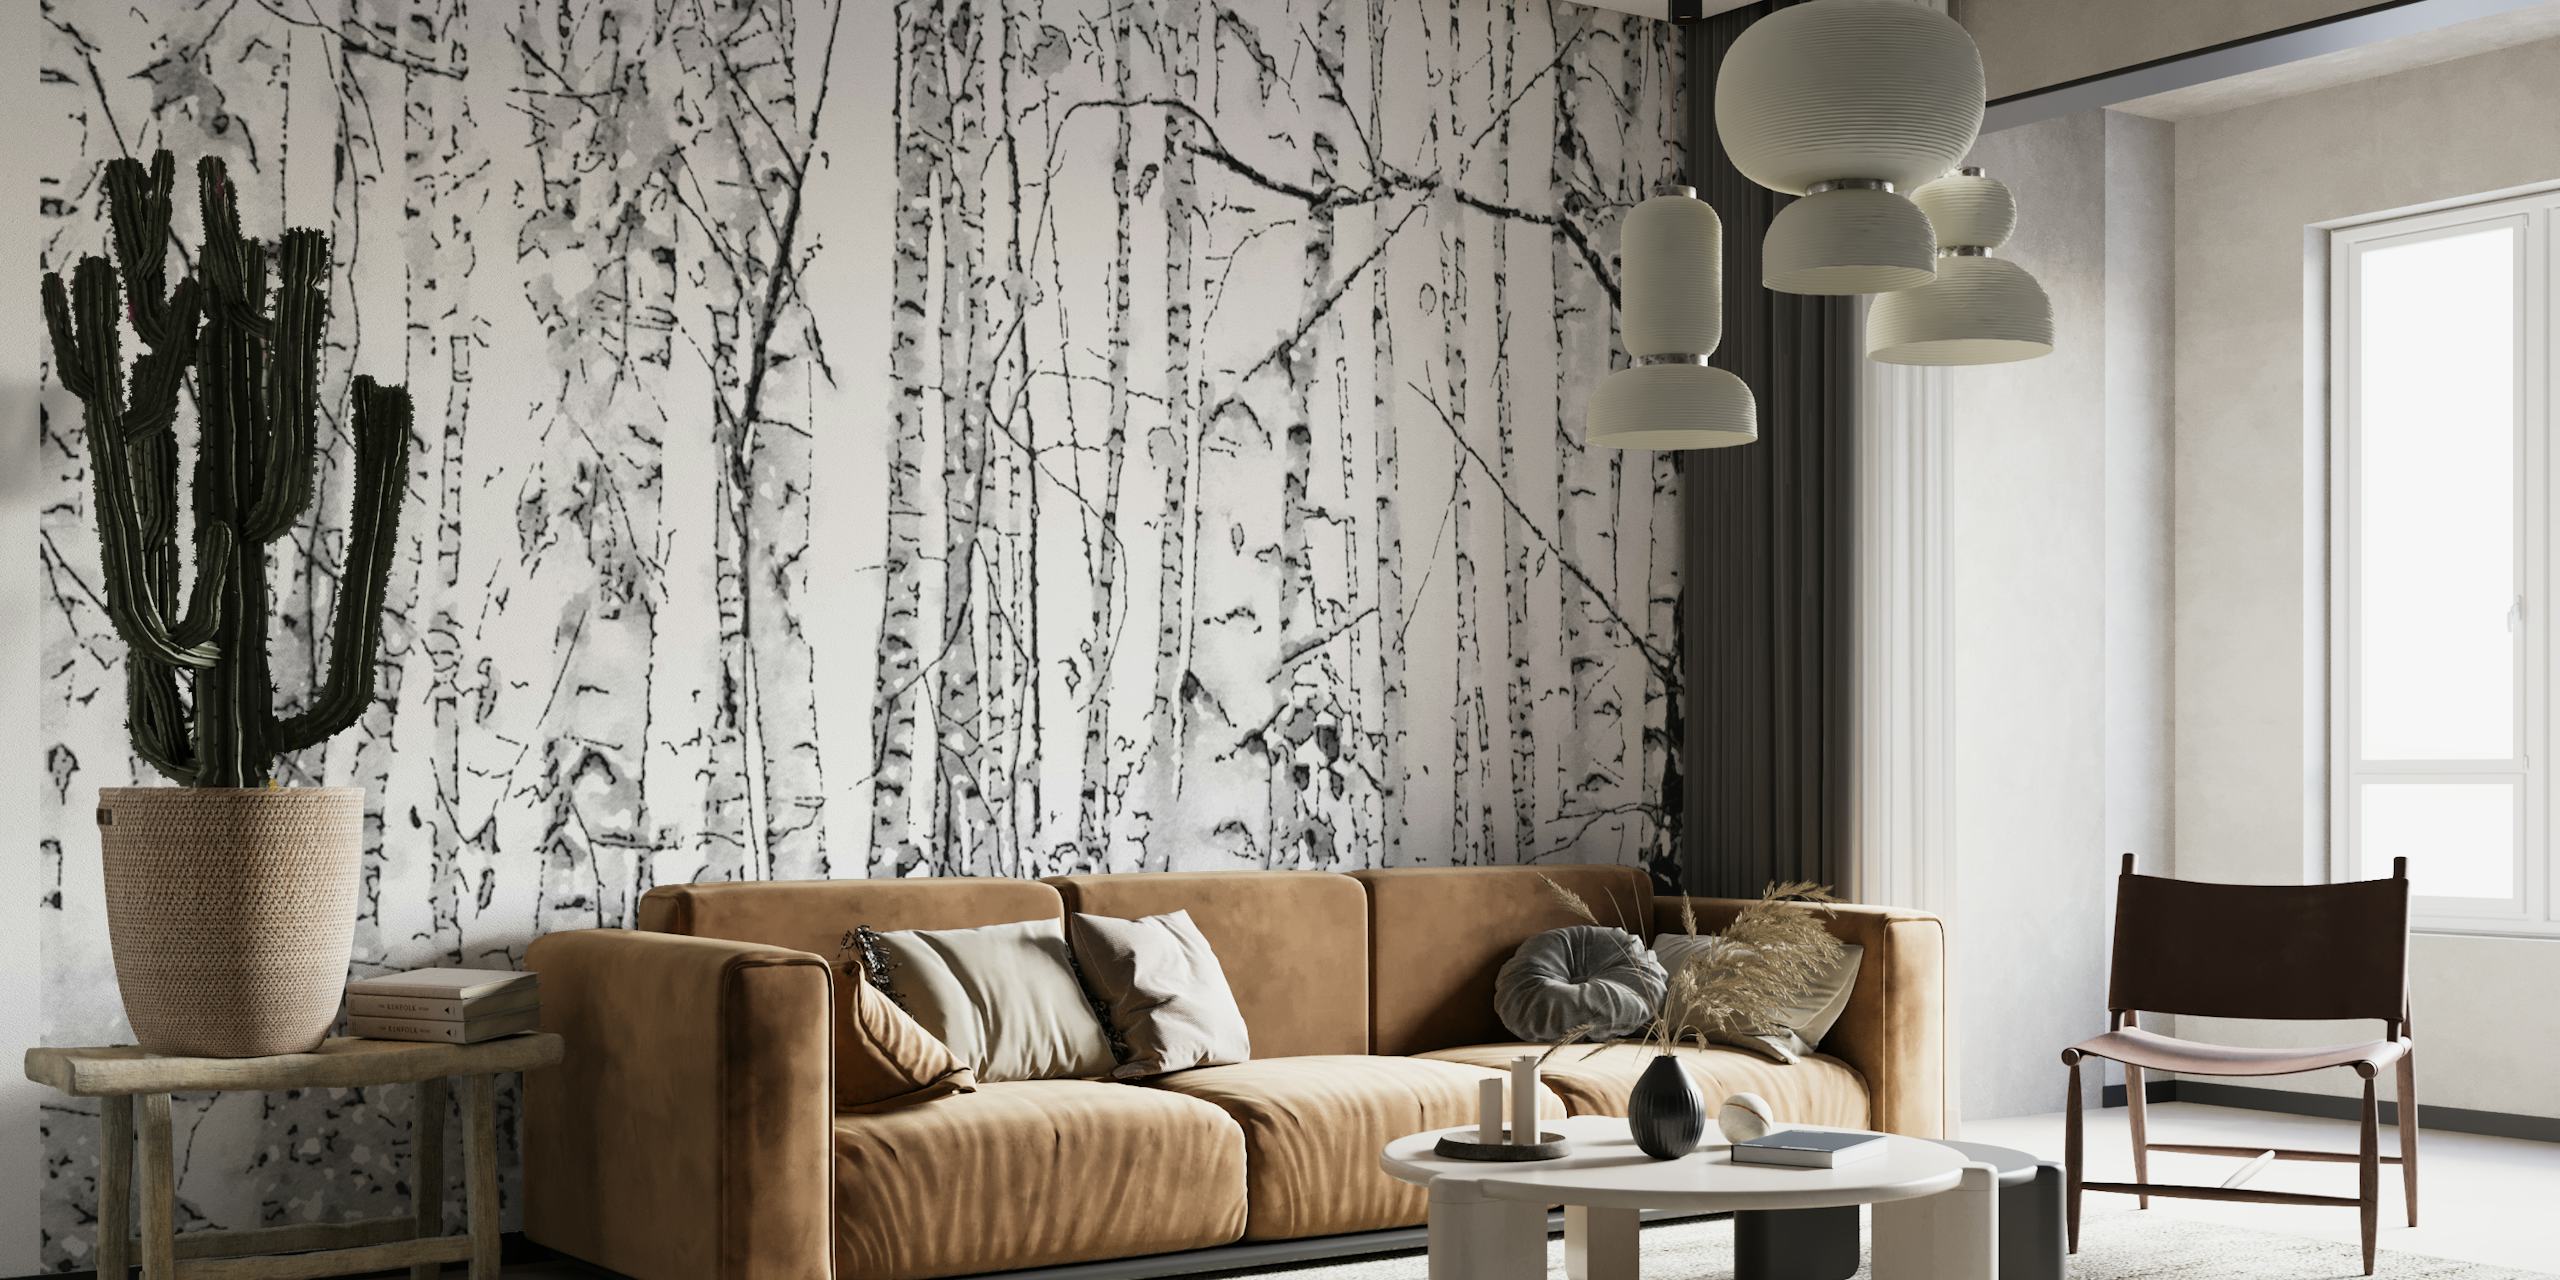 Schwarz-weiße Fototapete mit Birkenwald, die die ruhige Schönheit schlanker Birken darstellt.